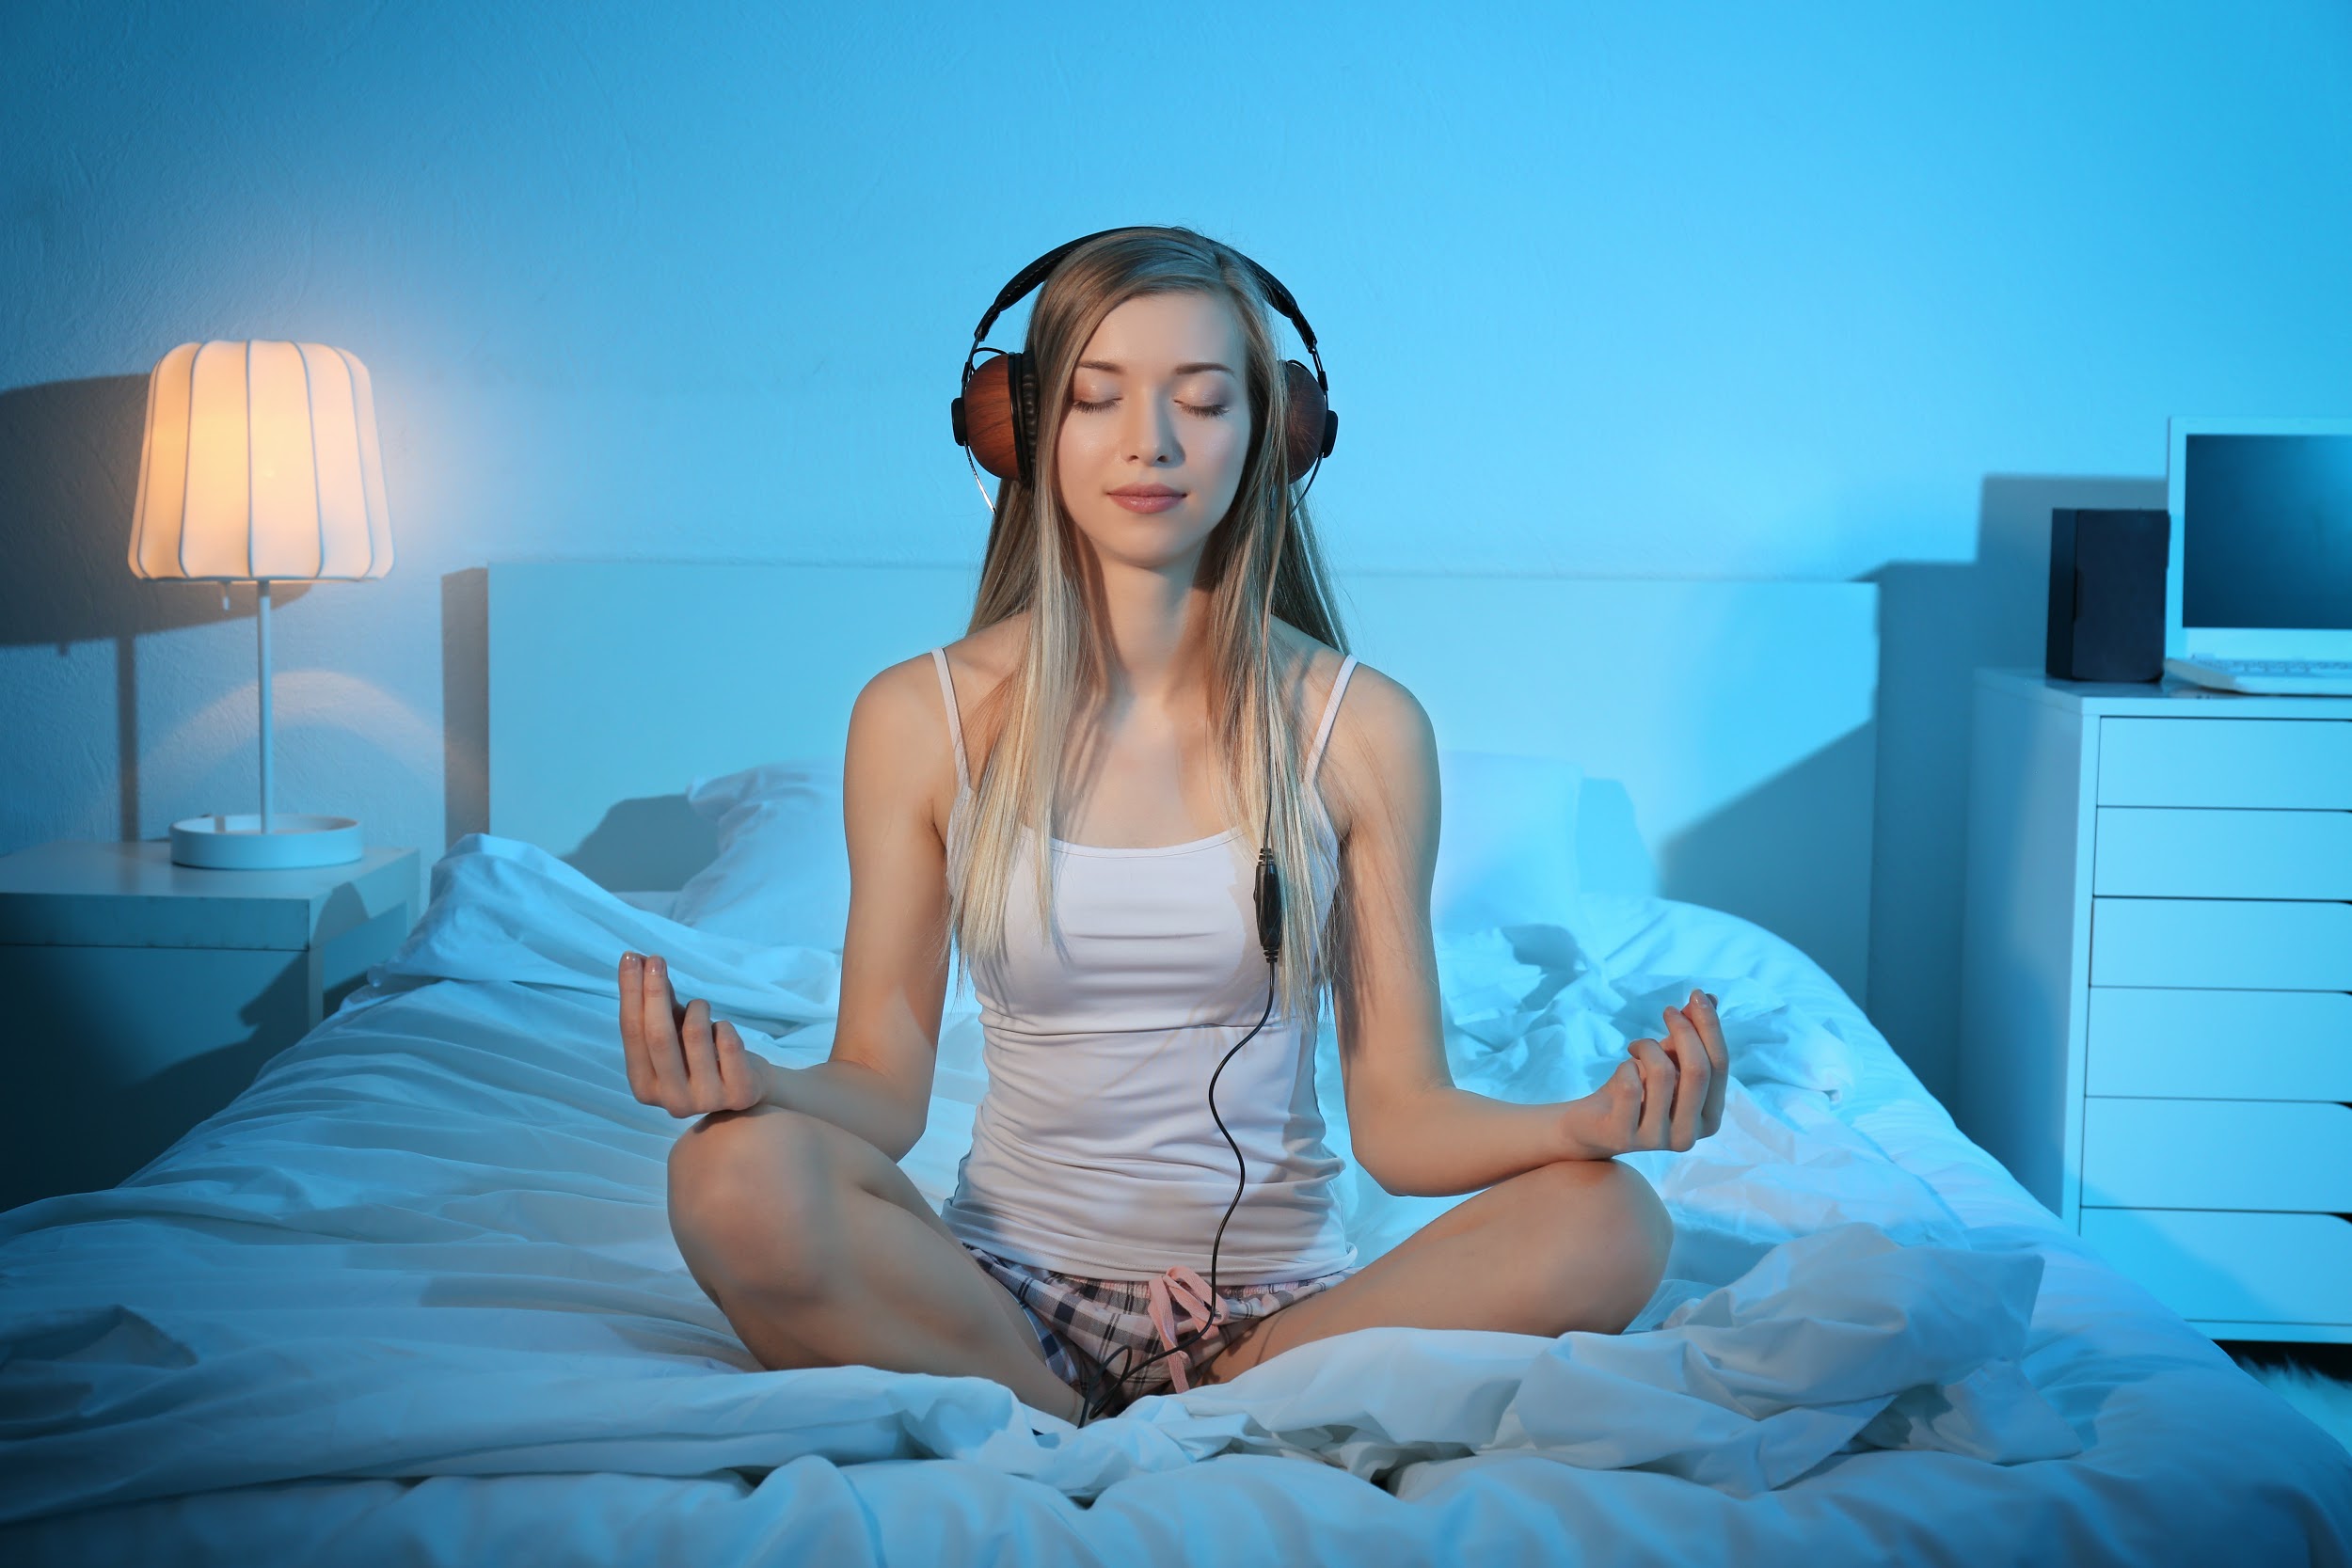 Музыку перед медитацией. Медитация для сна. Медитация перед сном. Медитация для сна для женщин. Расслабление перед сном.